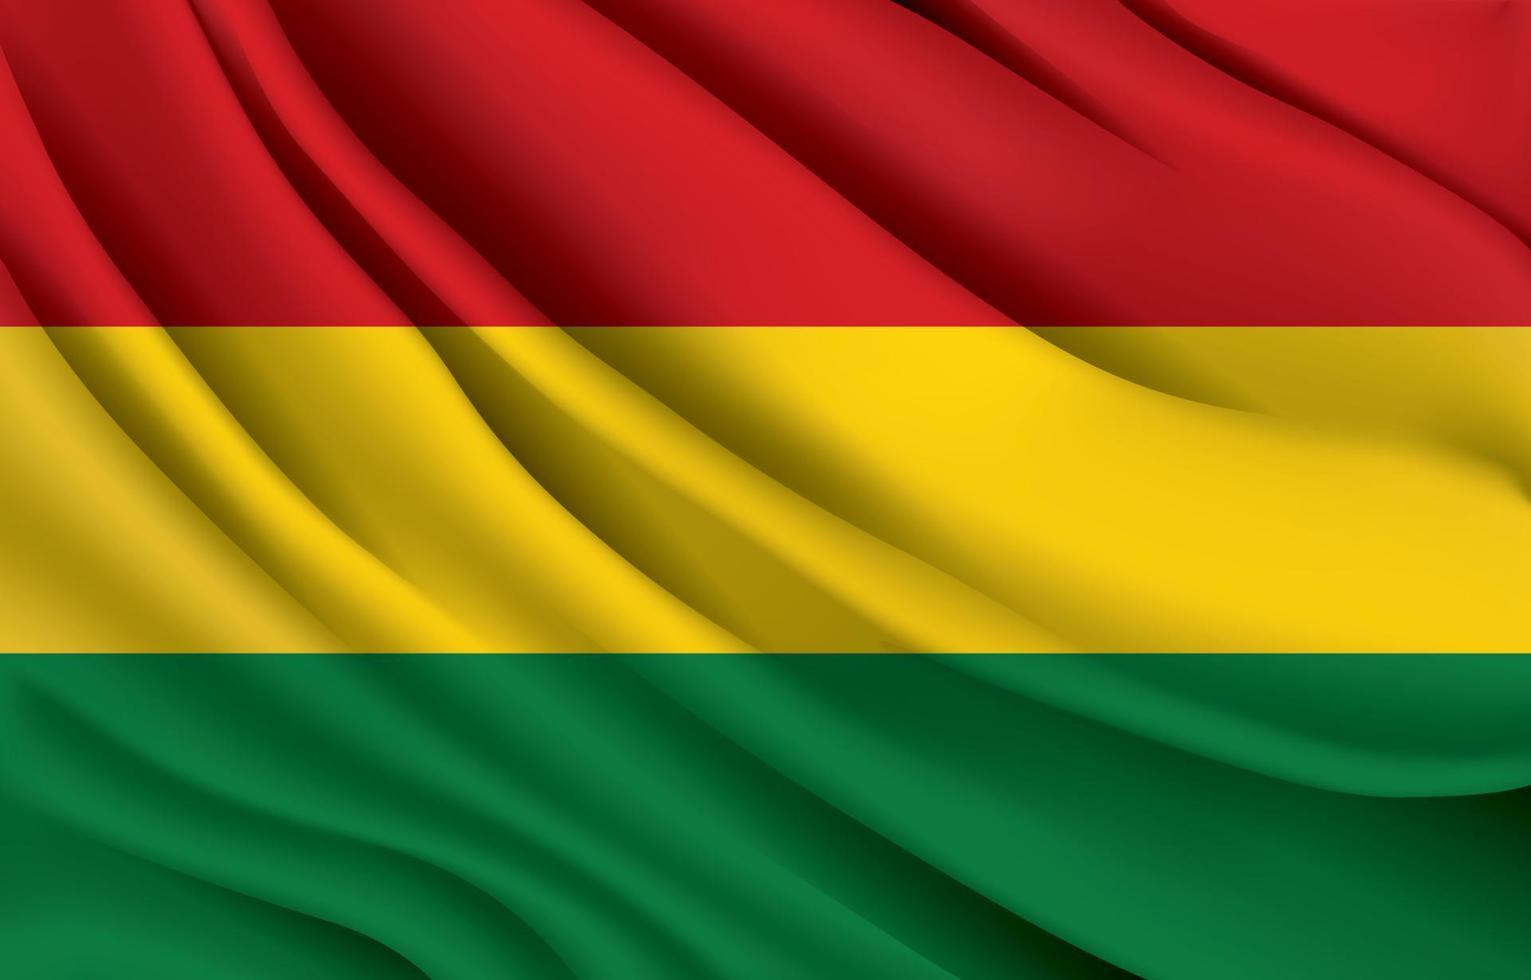 nationale vlag van Bolivia zwaait met realistische vectorillustratie vector